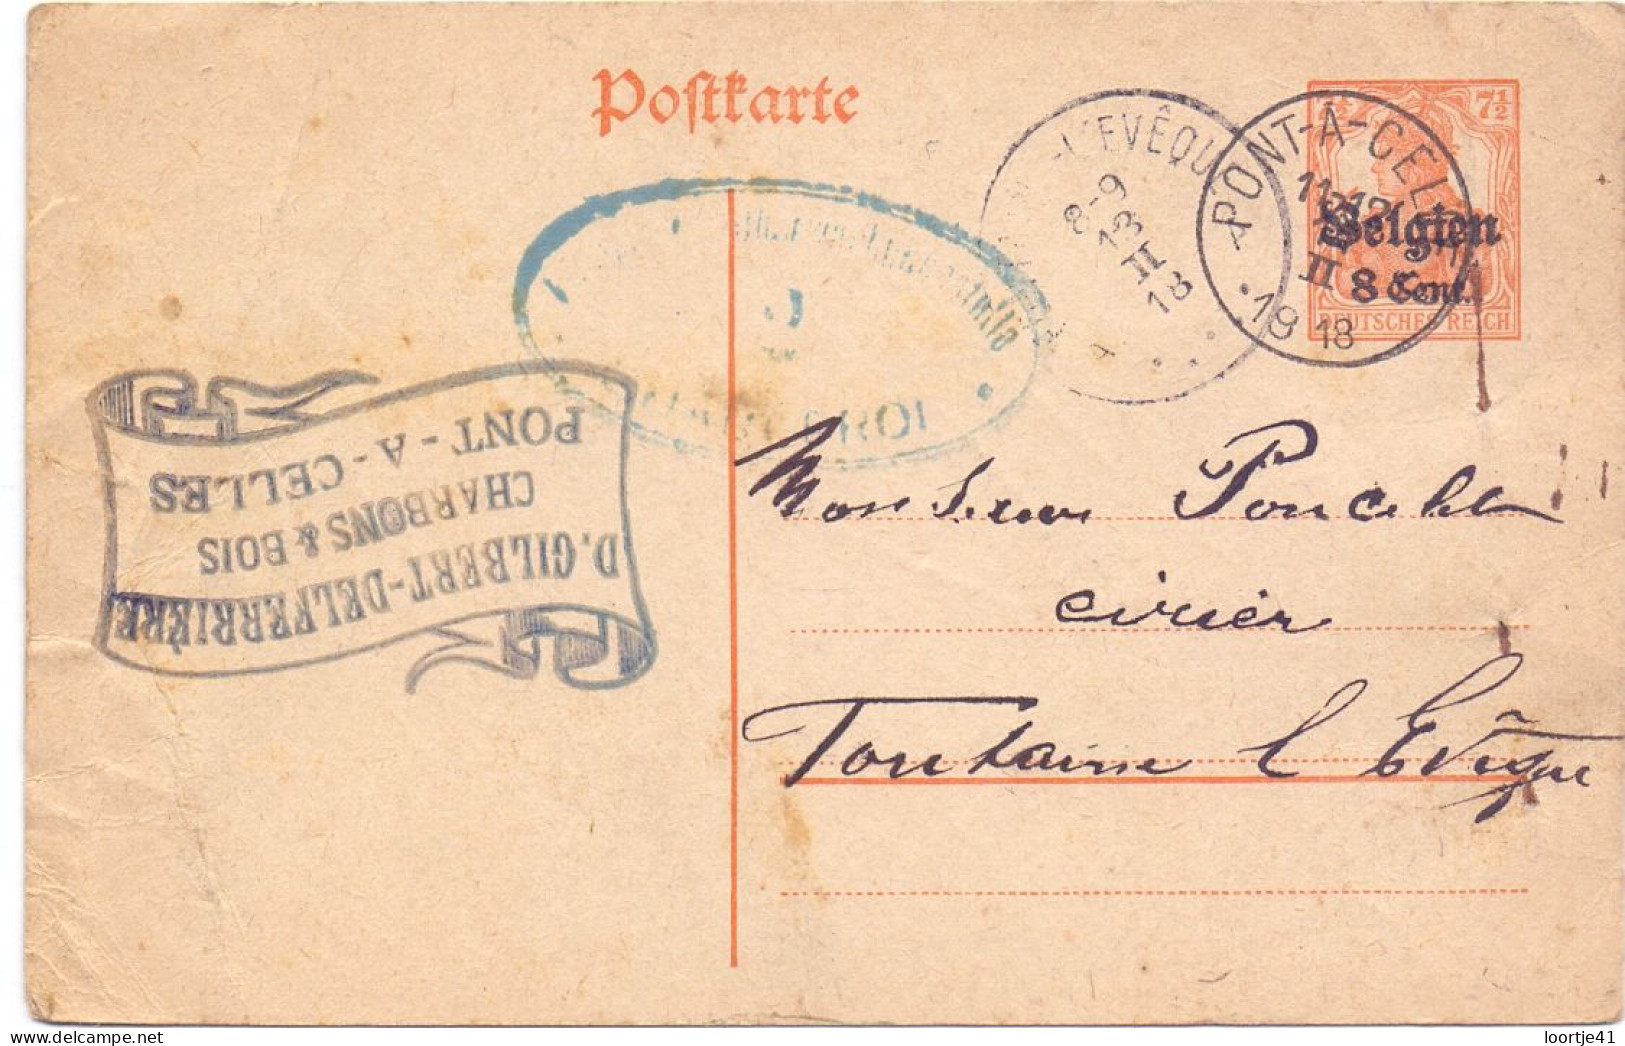 Briefkaart Carte Postale Postkarte Duitse Bezetting - Charbons Pont A Celles à Fontaine L'Eveque - 1918 - Deutsche Besatzung